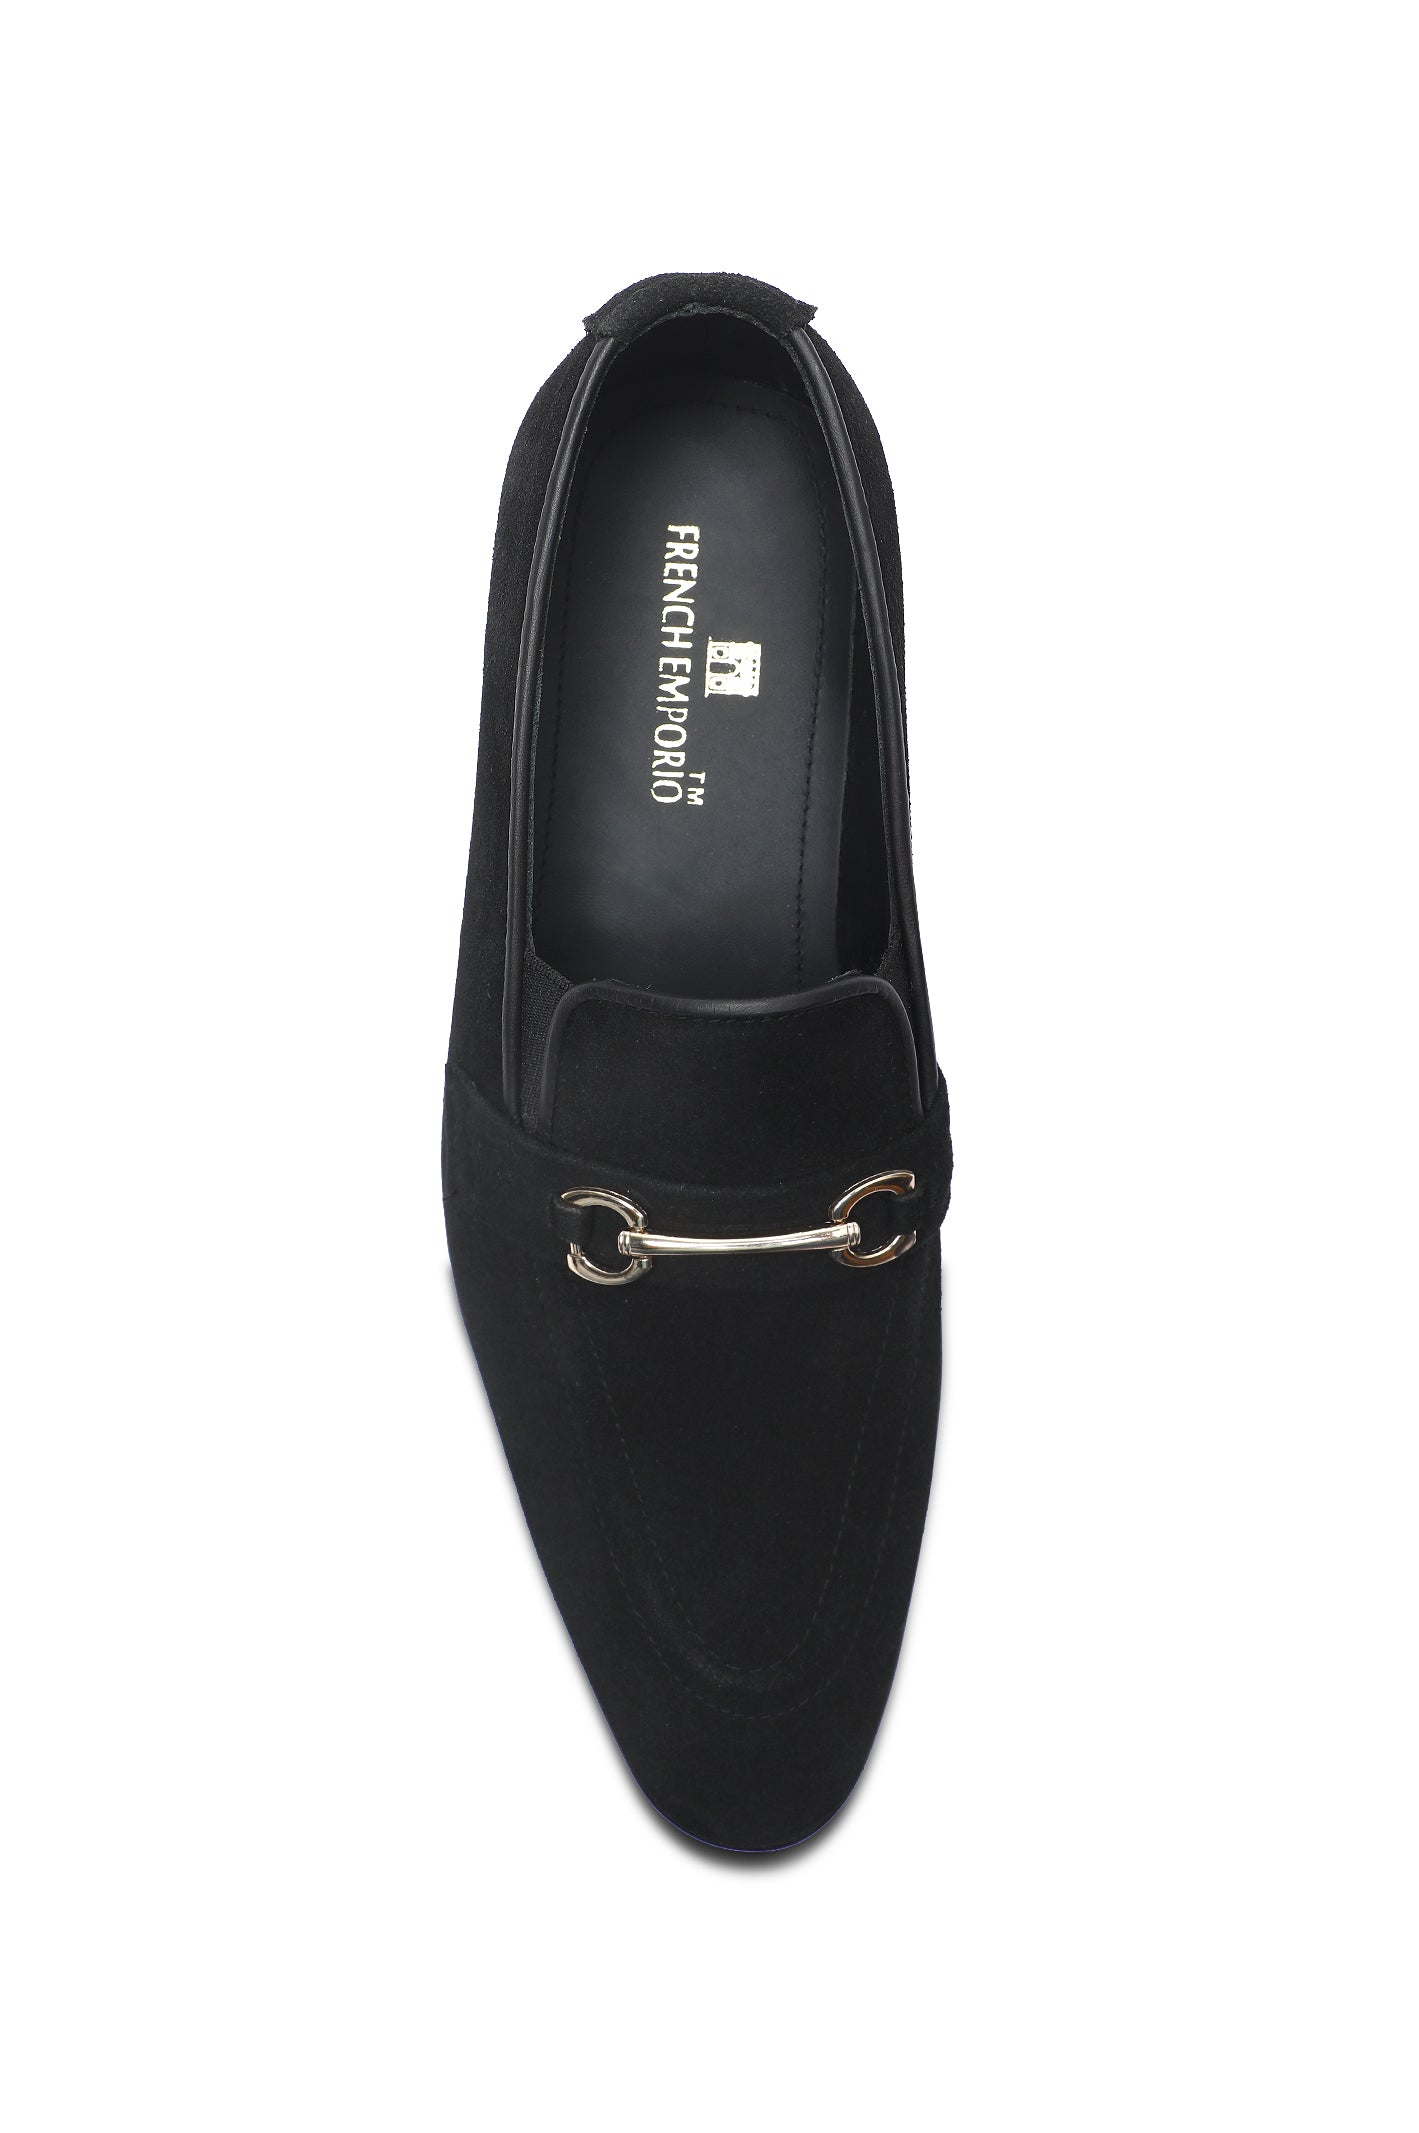 Formal Shoes For Men SKU: SMF-0190-BLACK